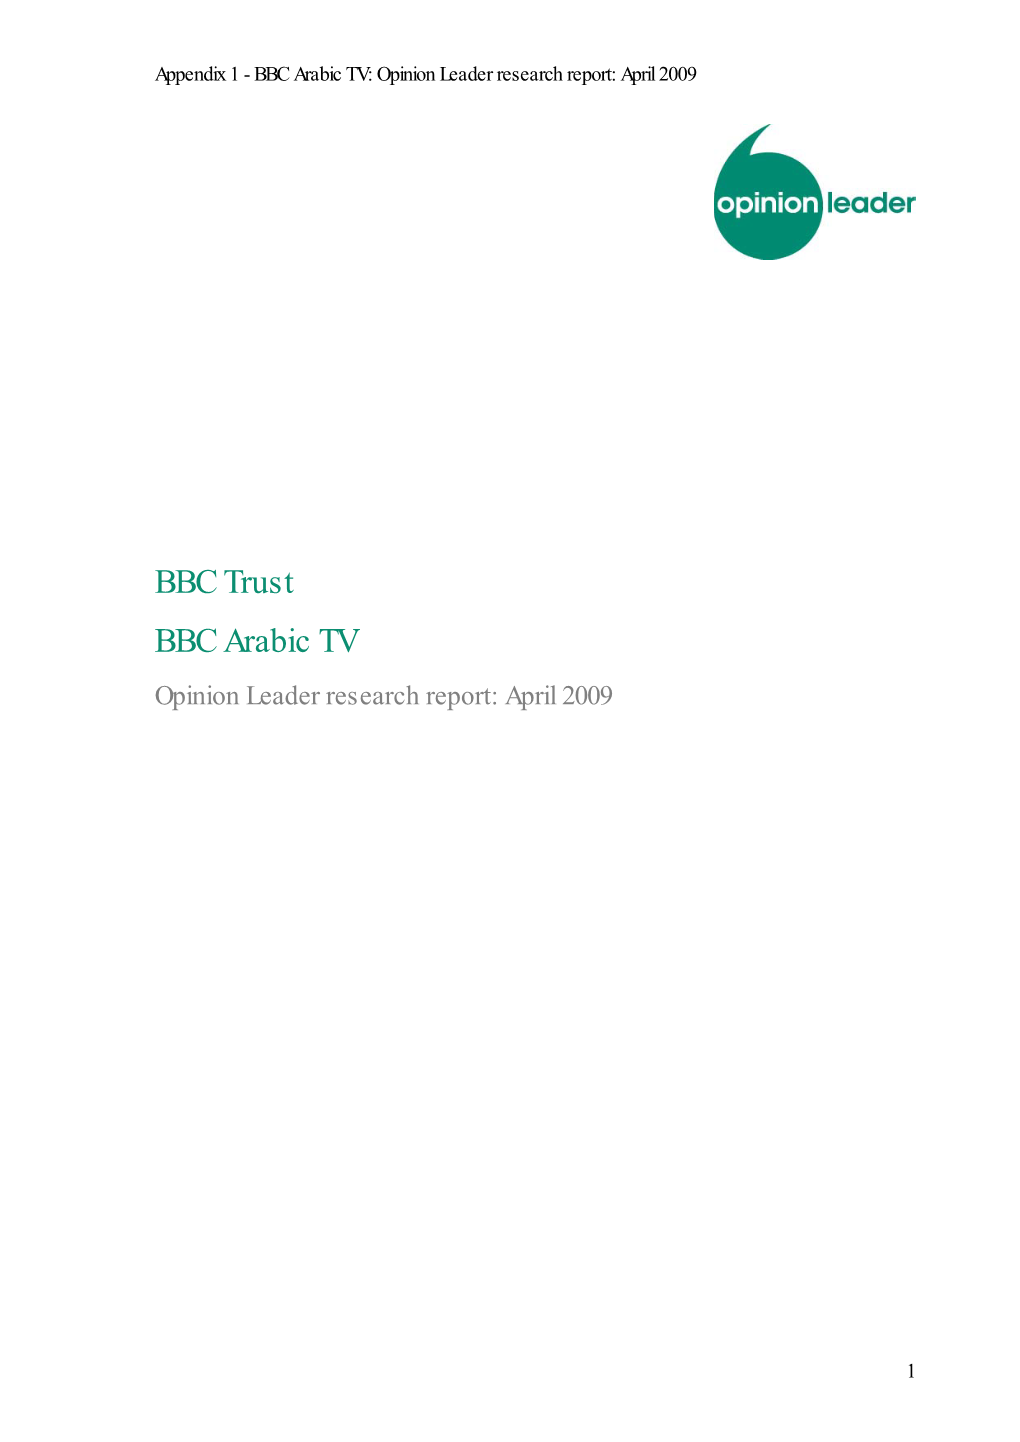 BBC Trust BBC Arabic TV Opinion Leader Research Report: April 2009